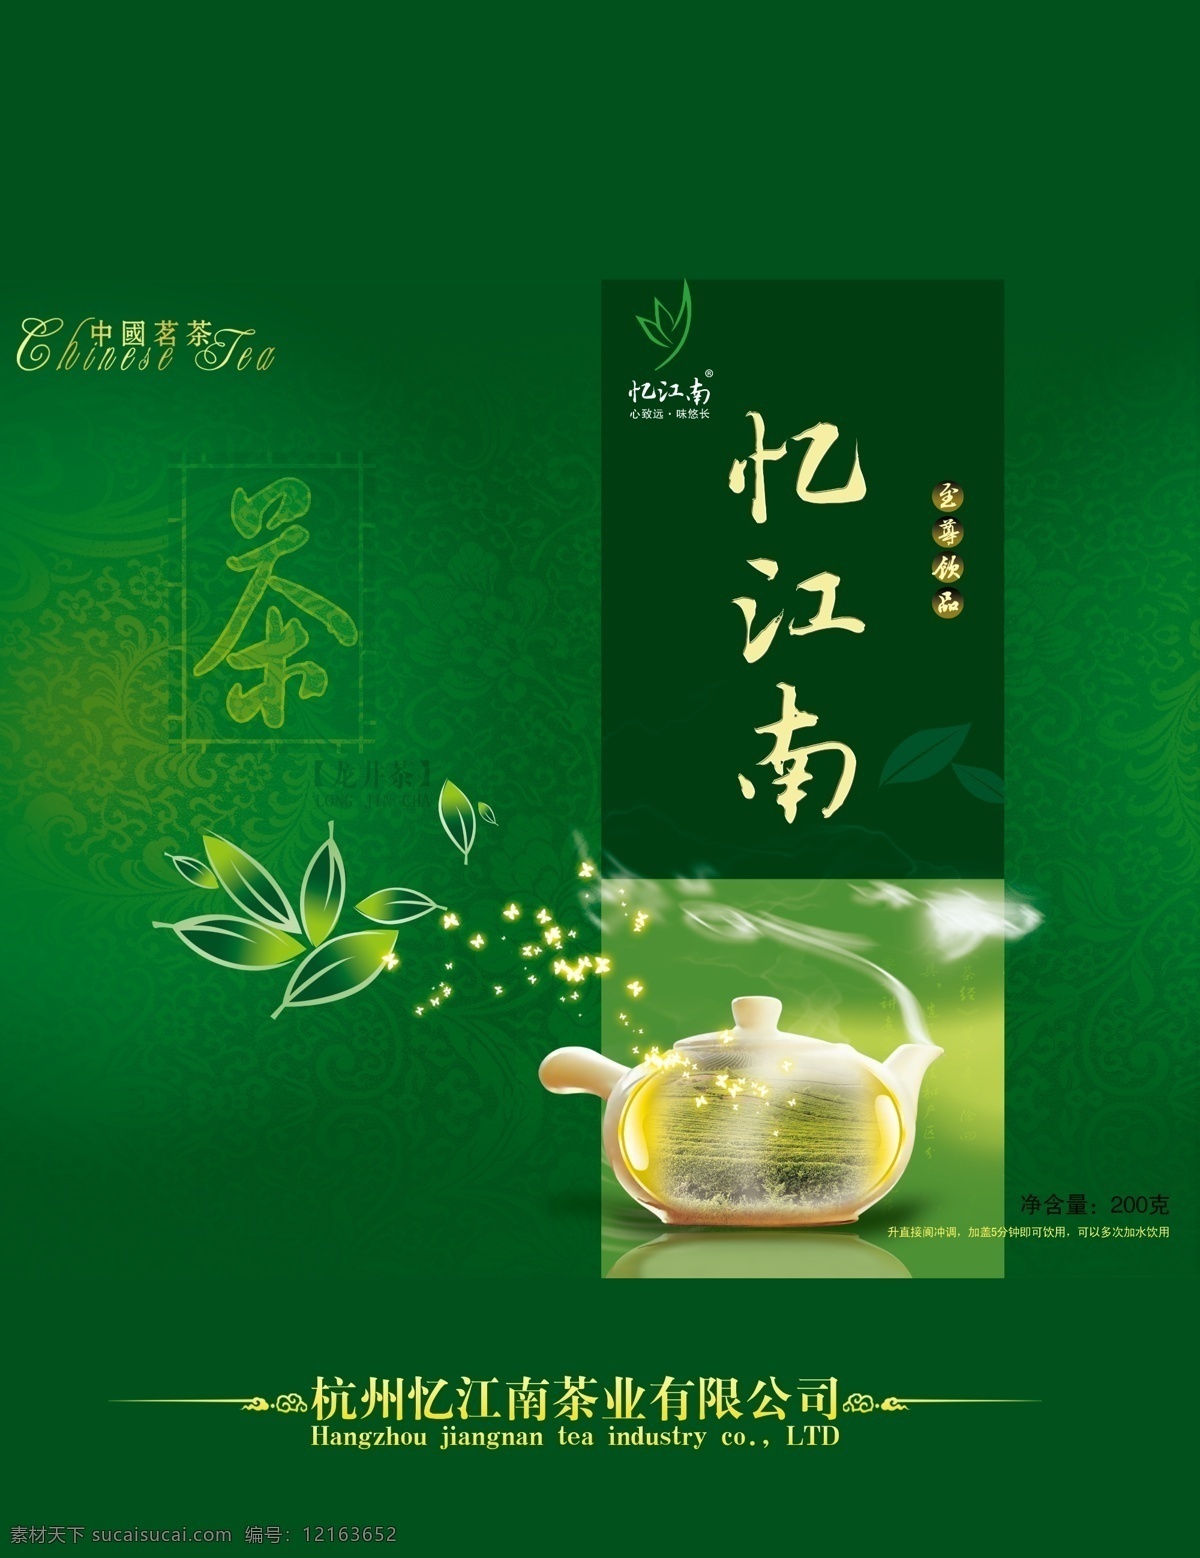 忆 江南 龙井茶 包装设计 展开图 忆江南 包装盒 茶叶包装 茶 绿色包装 中国茗茶